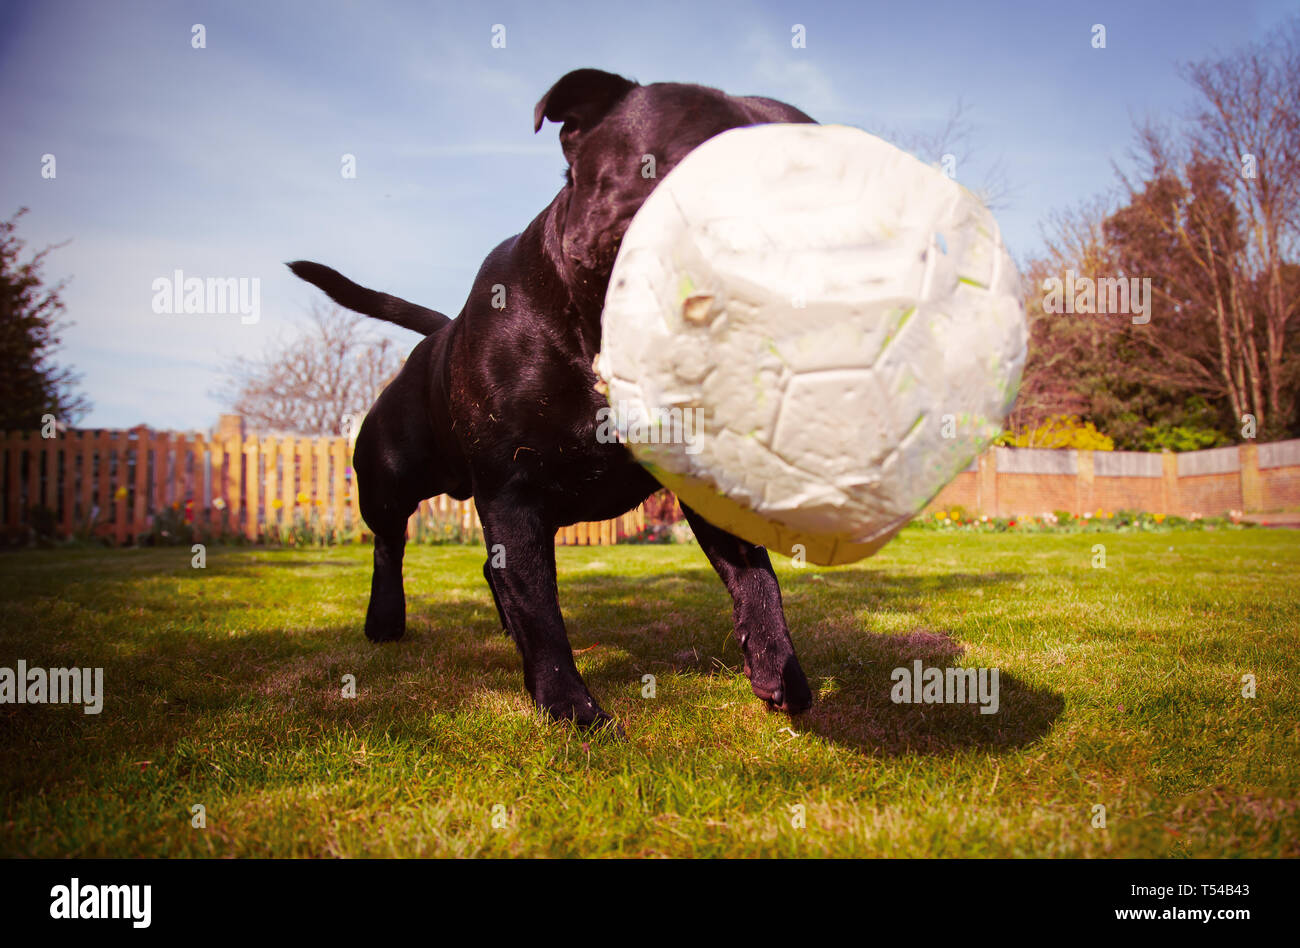 Un Staffordshire Bull Terrier chien jouant avec un ballon de football c'est un peu dégonflé après mastication. Prises d'un angle faible comme la balle rebondit en-avant Banque D'Images